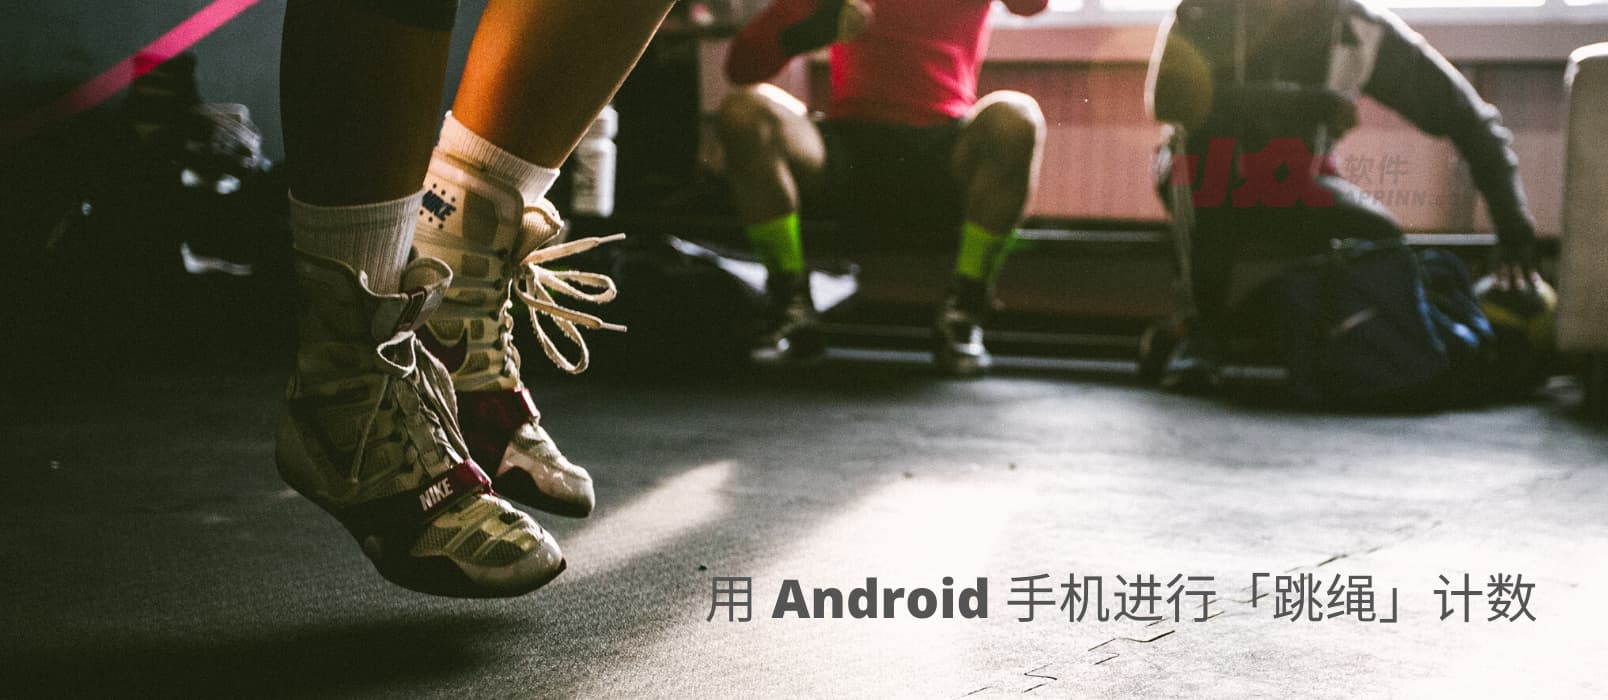 如何用 Android 手机进行跳绳计数？ 1